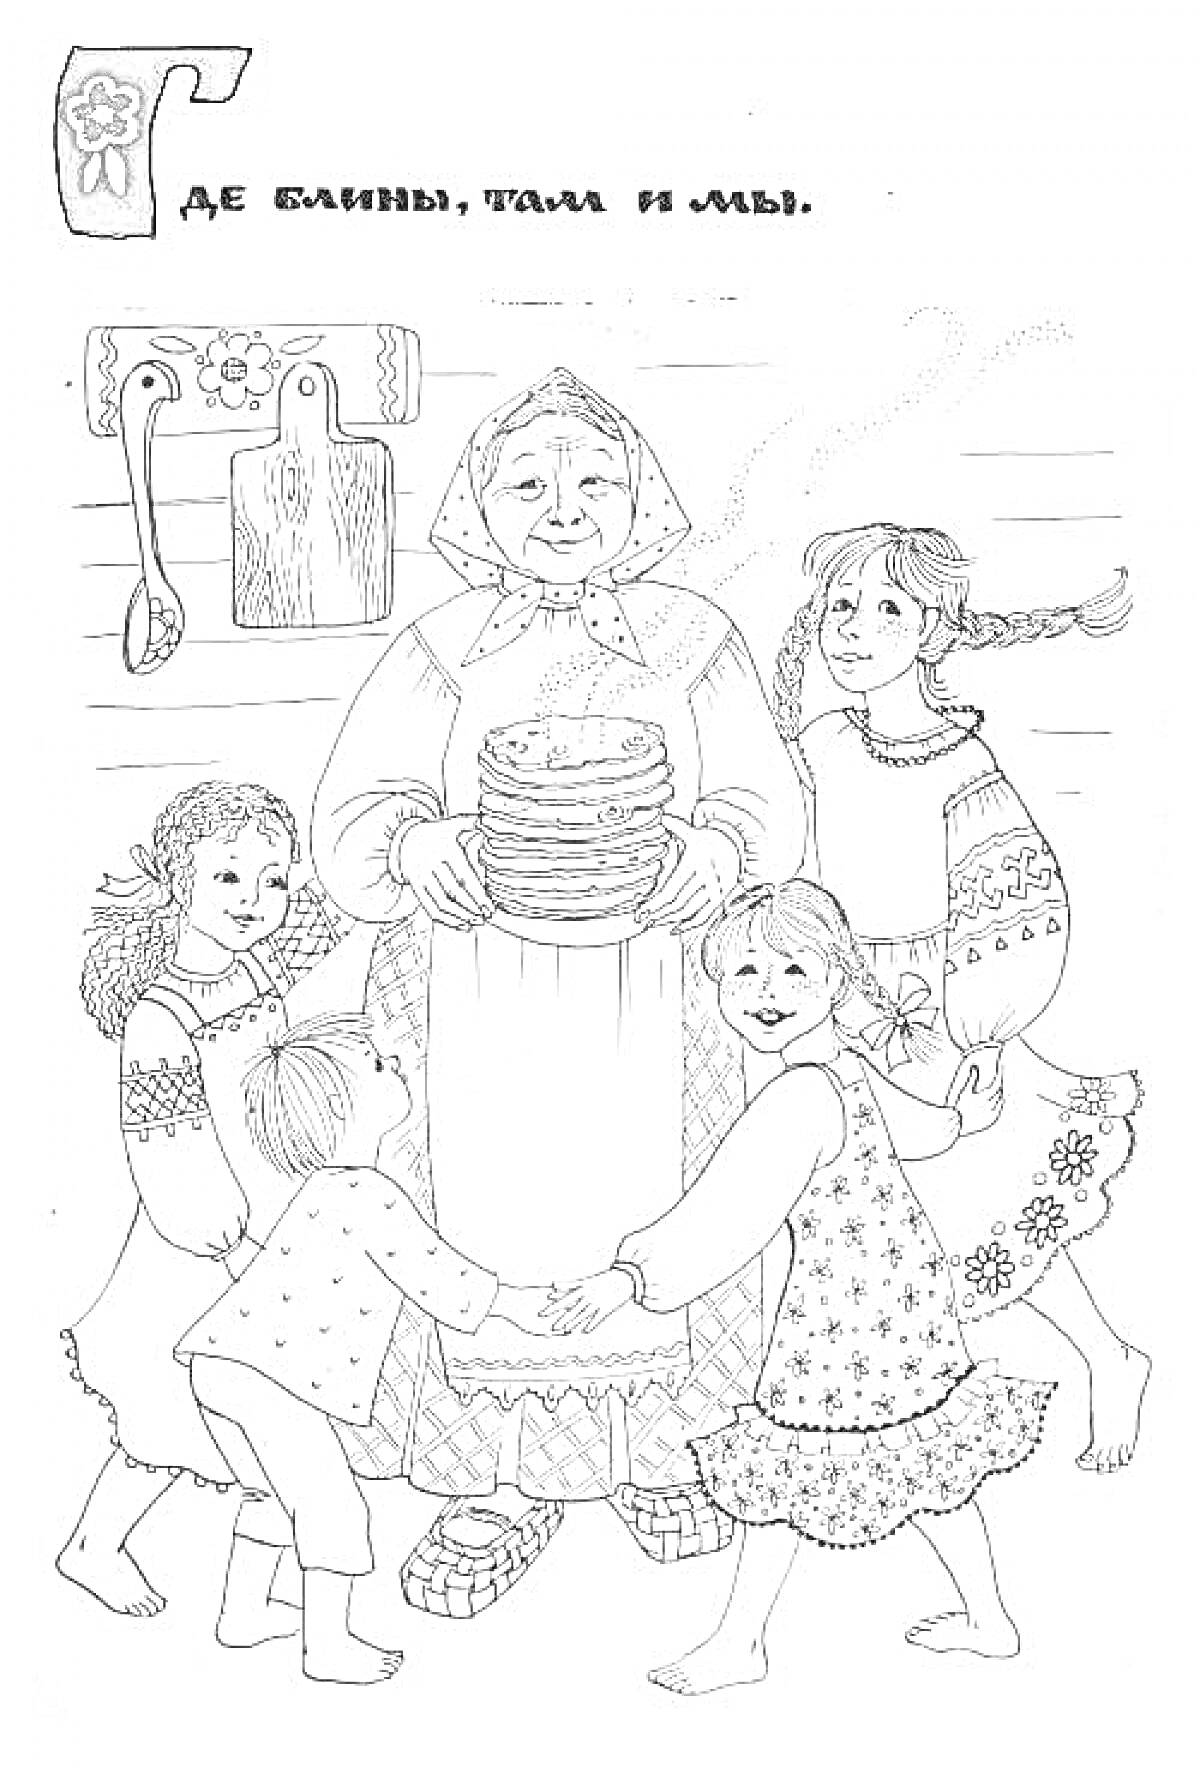 Бабушка держит стопку блинов, вокруг неё пятеро детей в хороводе